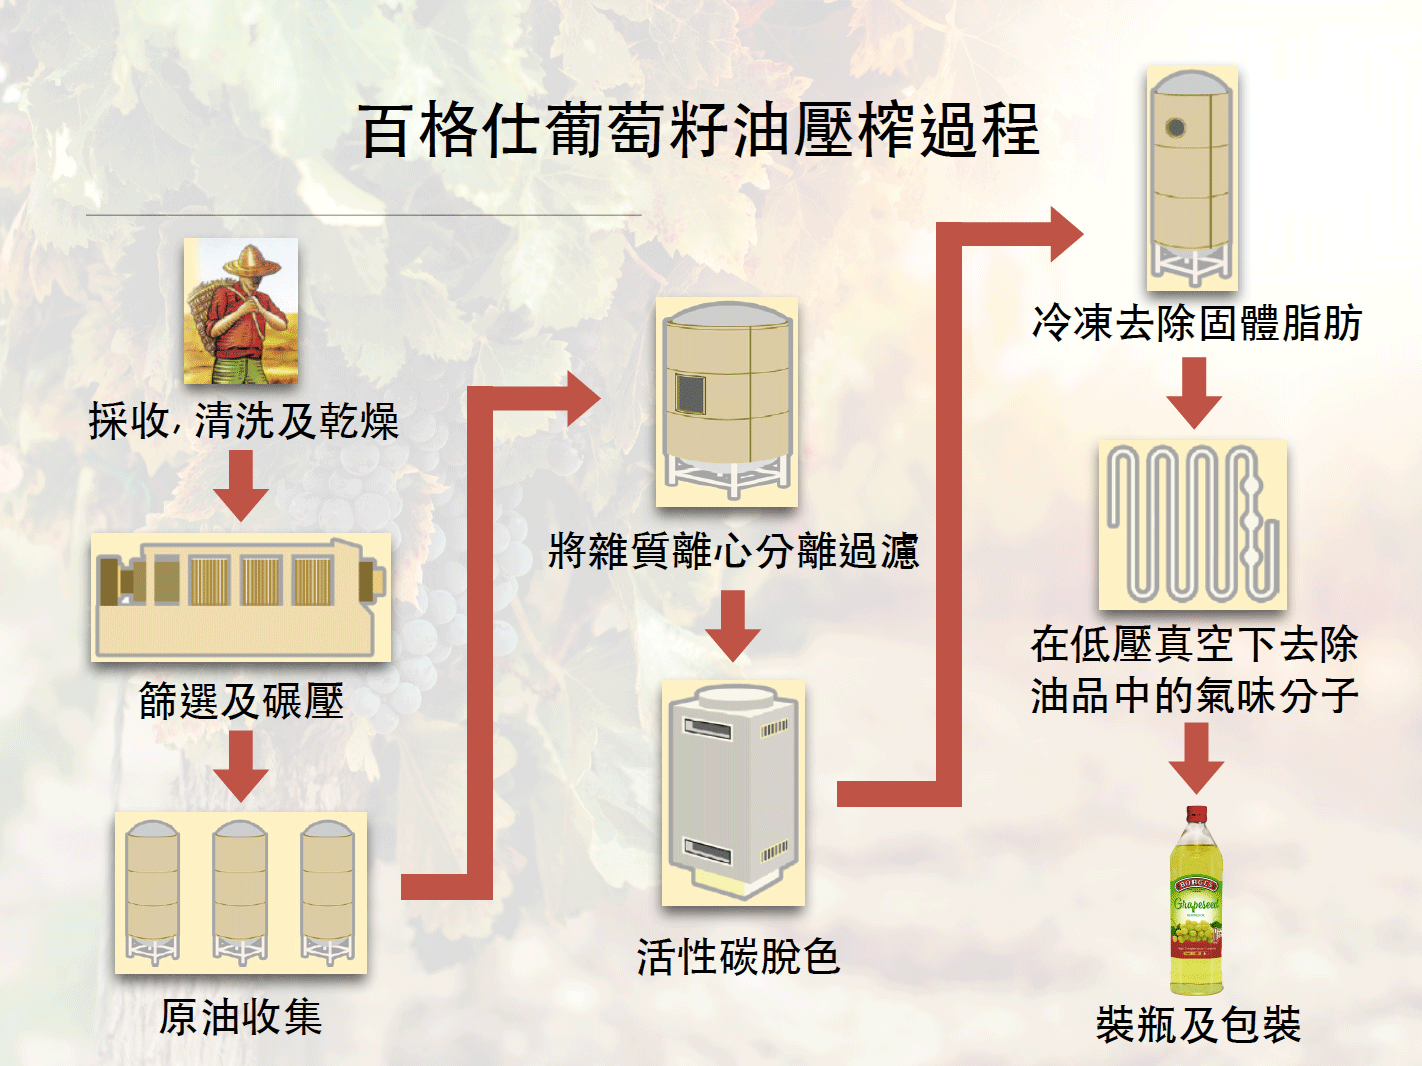 百格仕葡萄籽油压榨过程